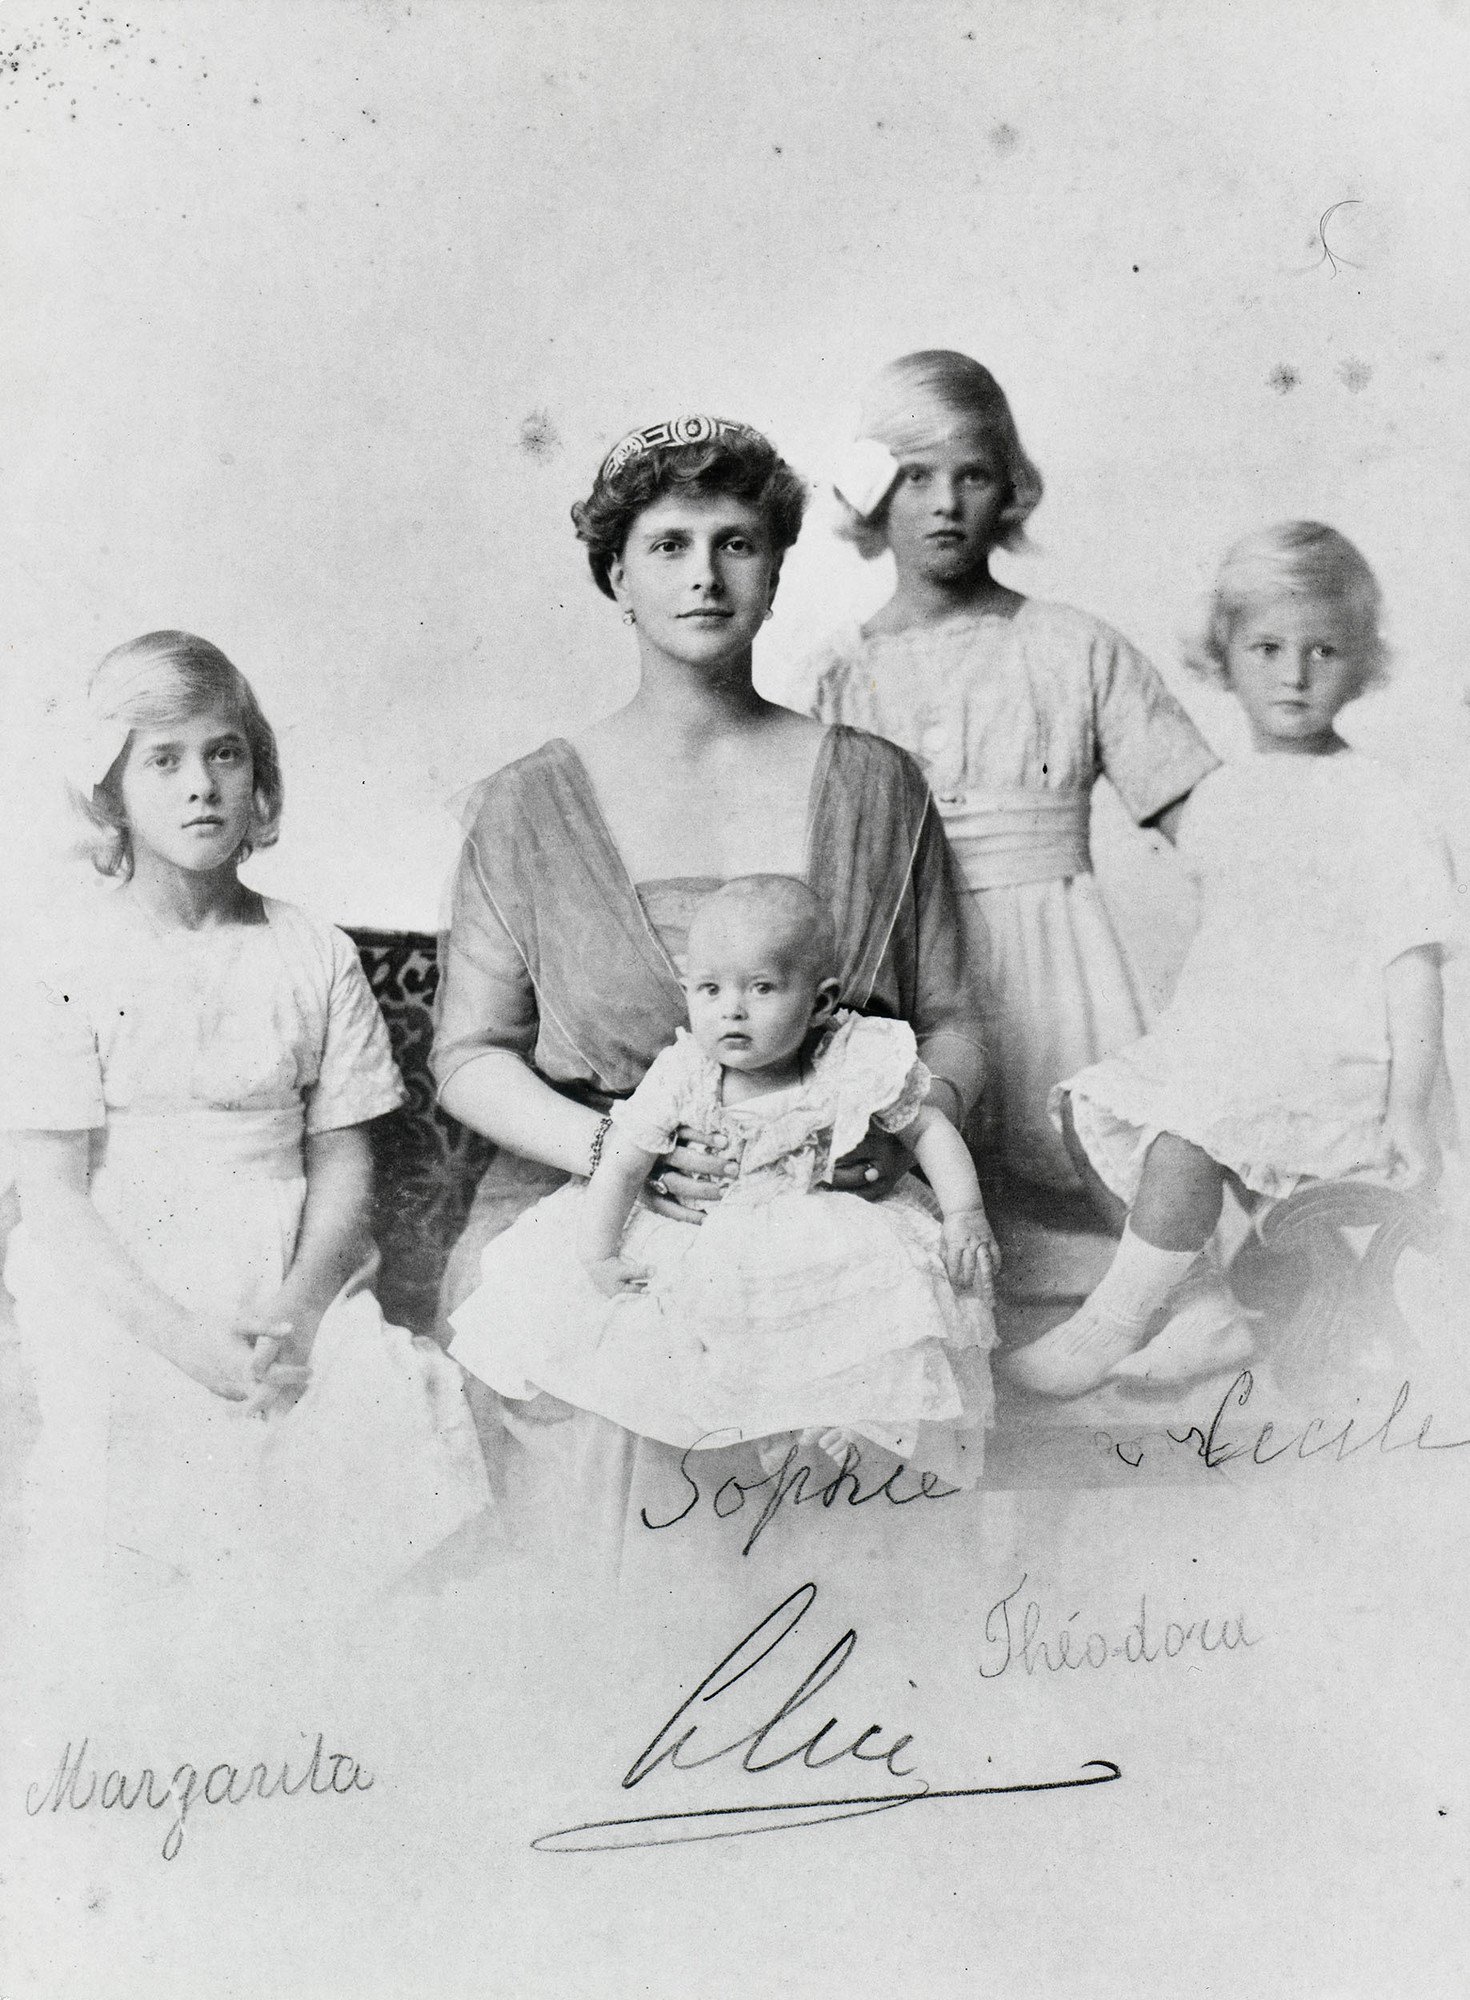 Zu sehen ist Prinzessin Alice von Griechenland mit ihren vier Töchtern. Prinzessin Alice sitzt auf einem Sofa mit dem Baby Sophia auf den Knieen. Prinzessin Margarita sitzt links neben ihr. Prinzessin Cecilia sitzt auf der Sofalehne rechts. Prinzessin Theodora steht zwischen ihrer Mutter und Prinzessin Cecilia.